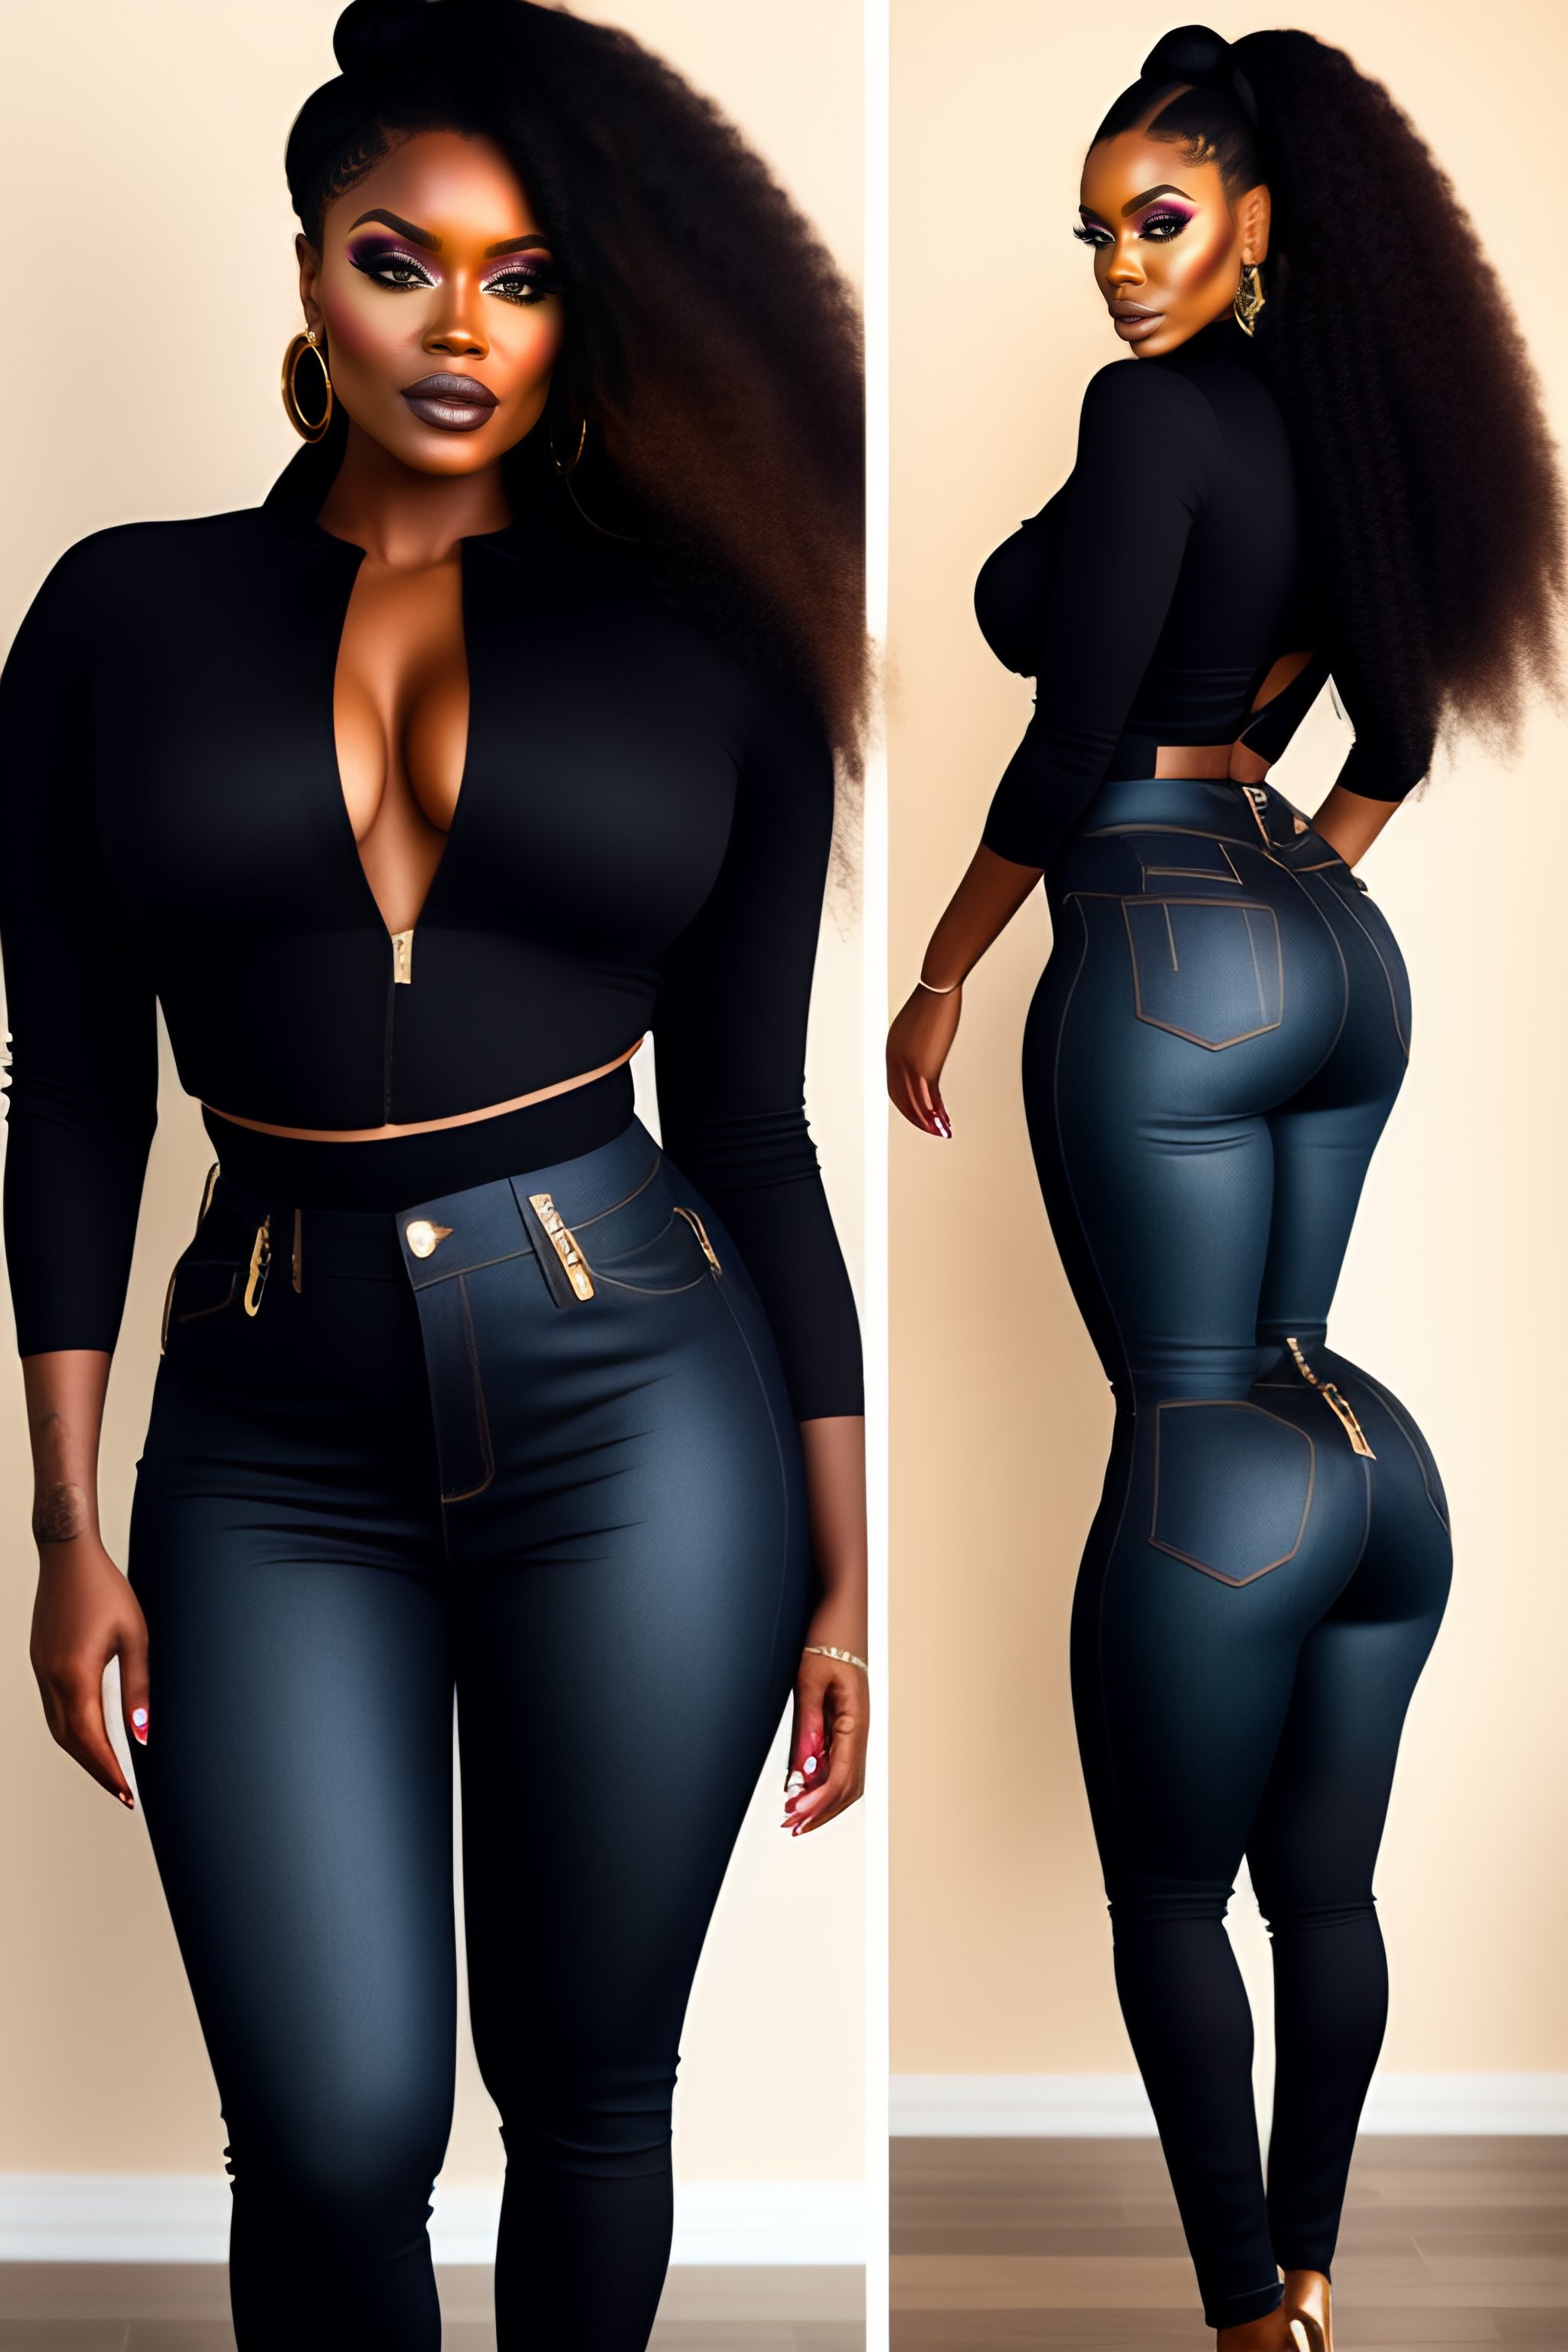 ajay parkar share black girl tight jeans photos